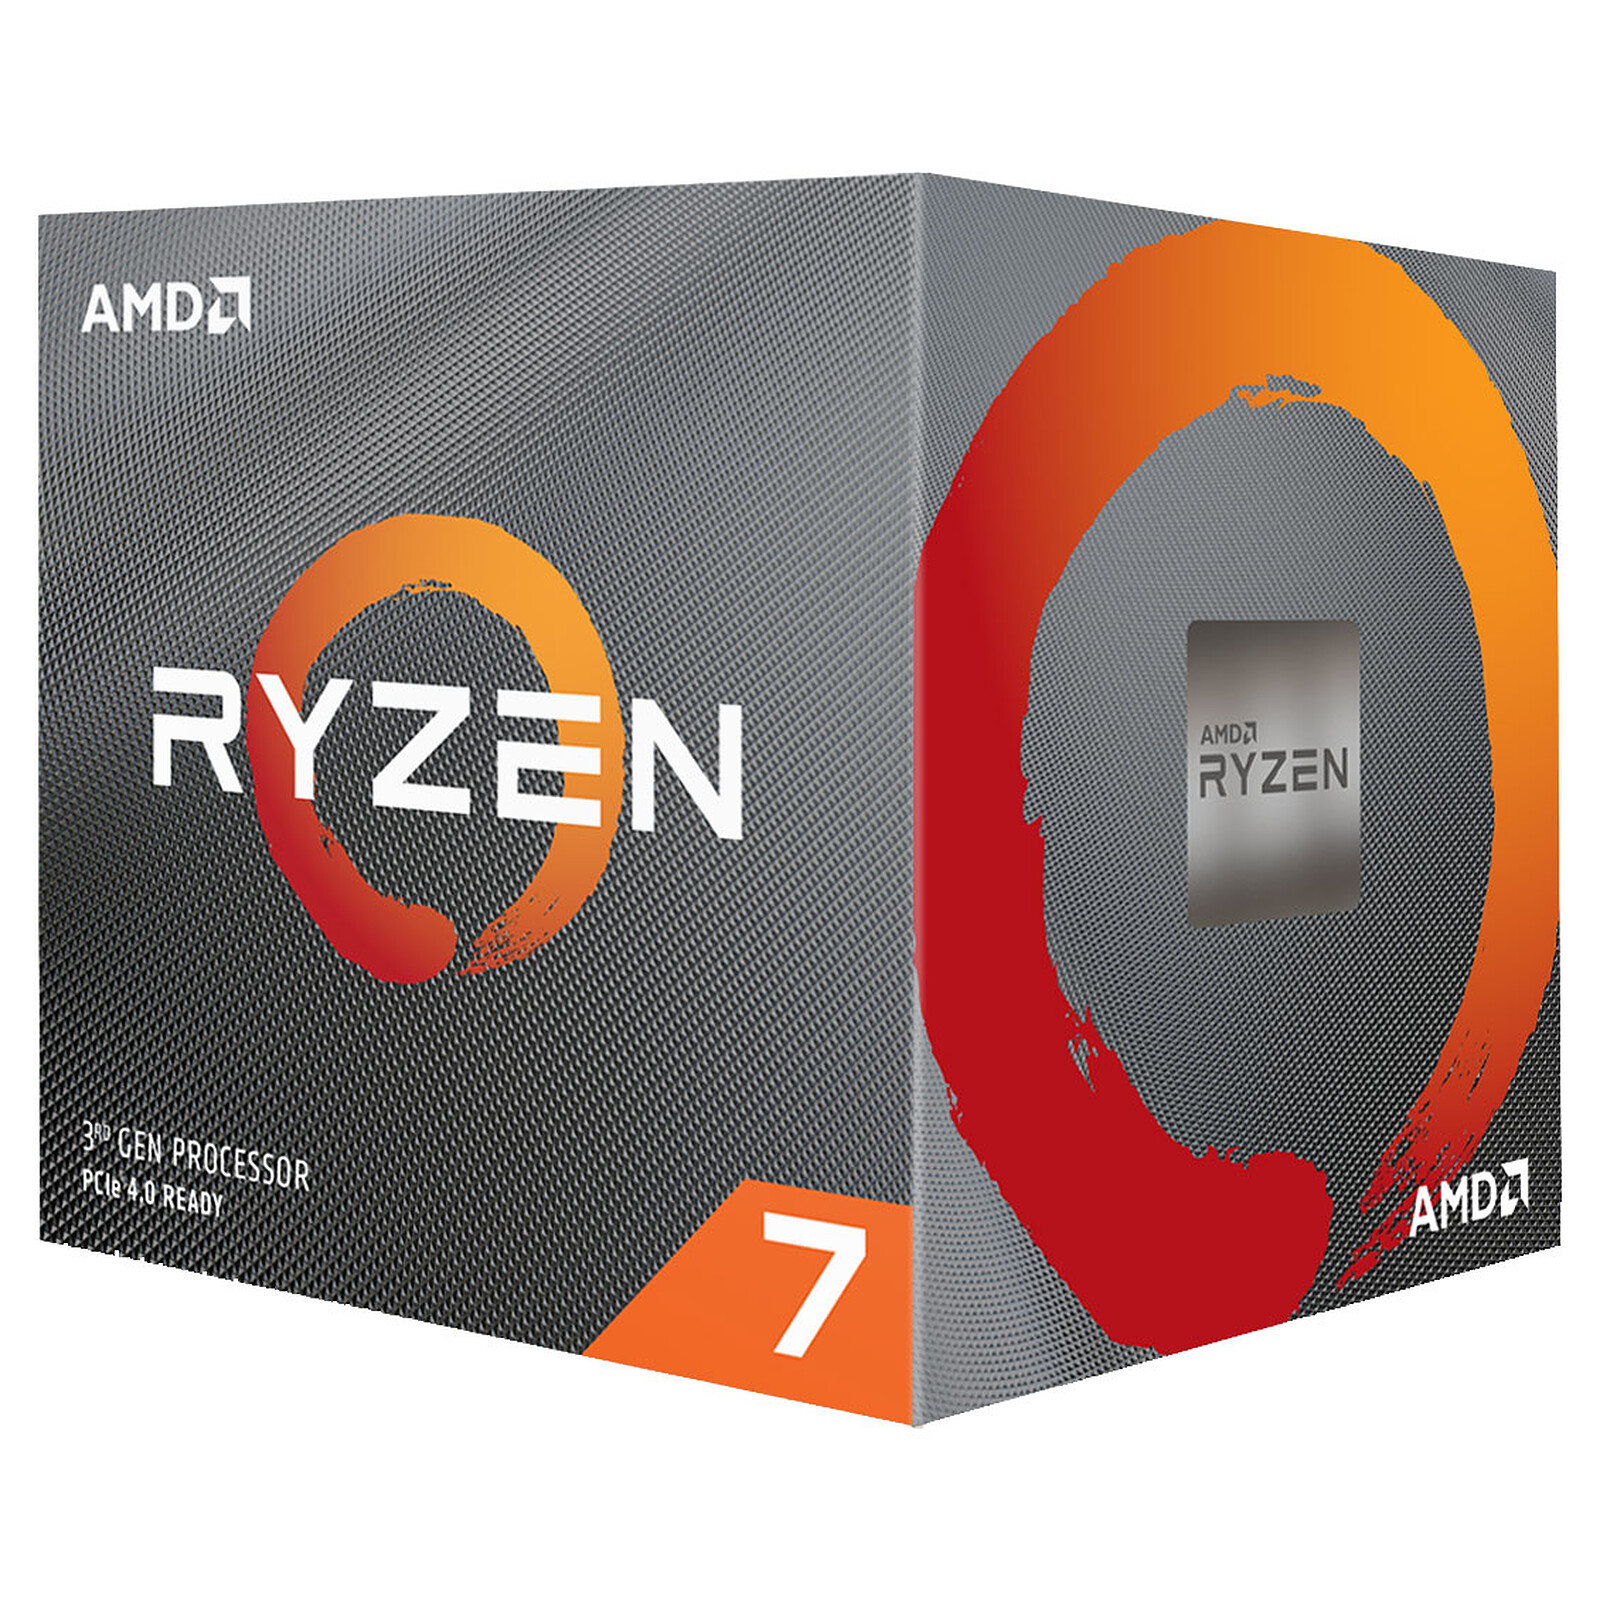 AMD Ryzen7 3700X with Wraith Prism